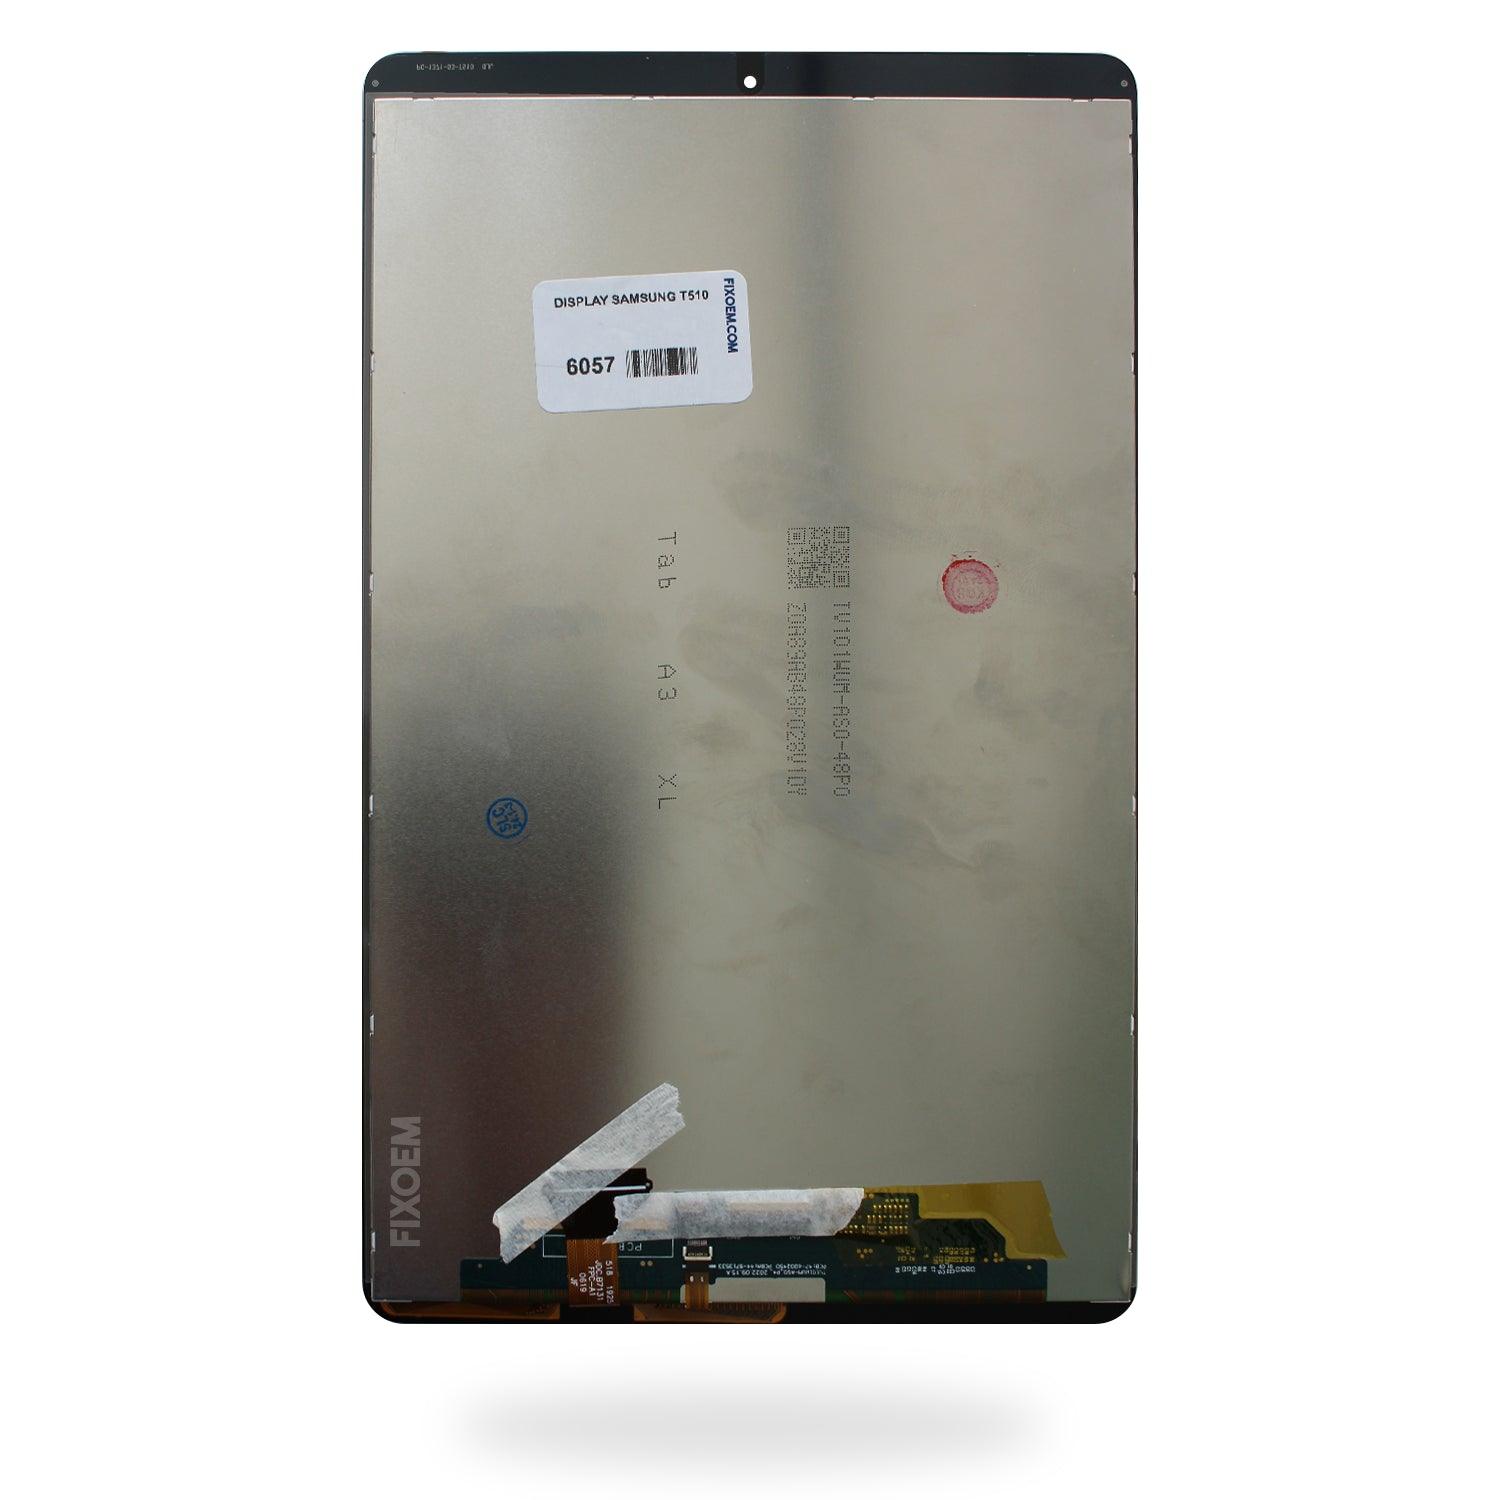 Display Samsung Tab A SM-T510 / SM-T515 / SM-T517 2019 |+2,000 reseñas 4.8/5 ⭐